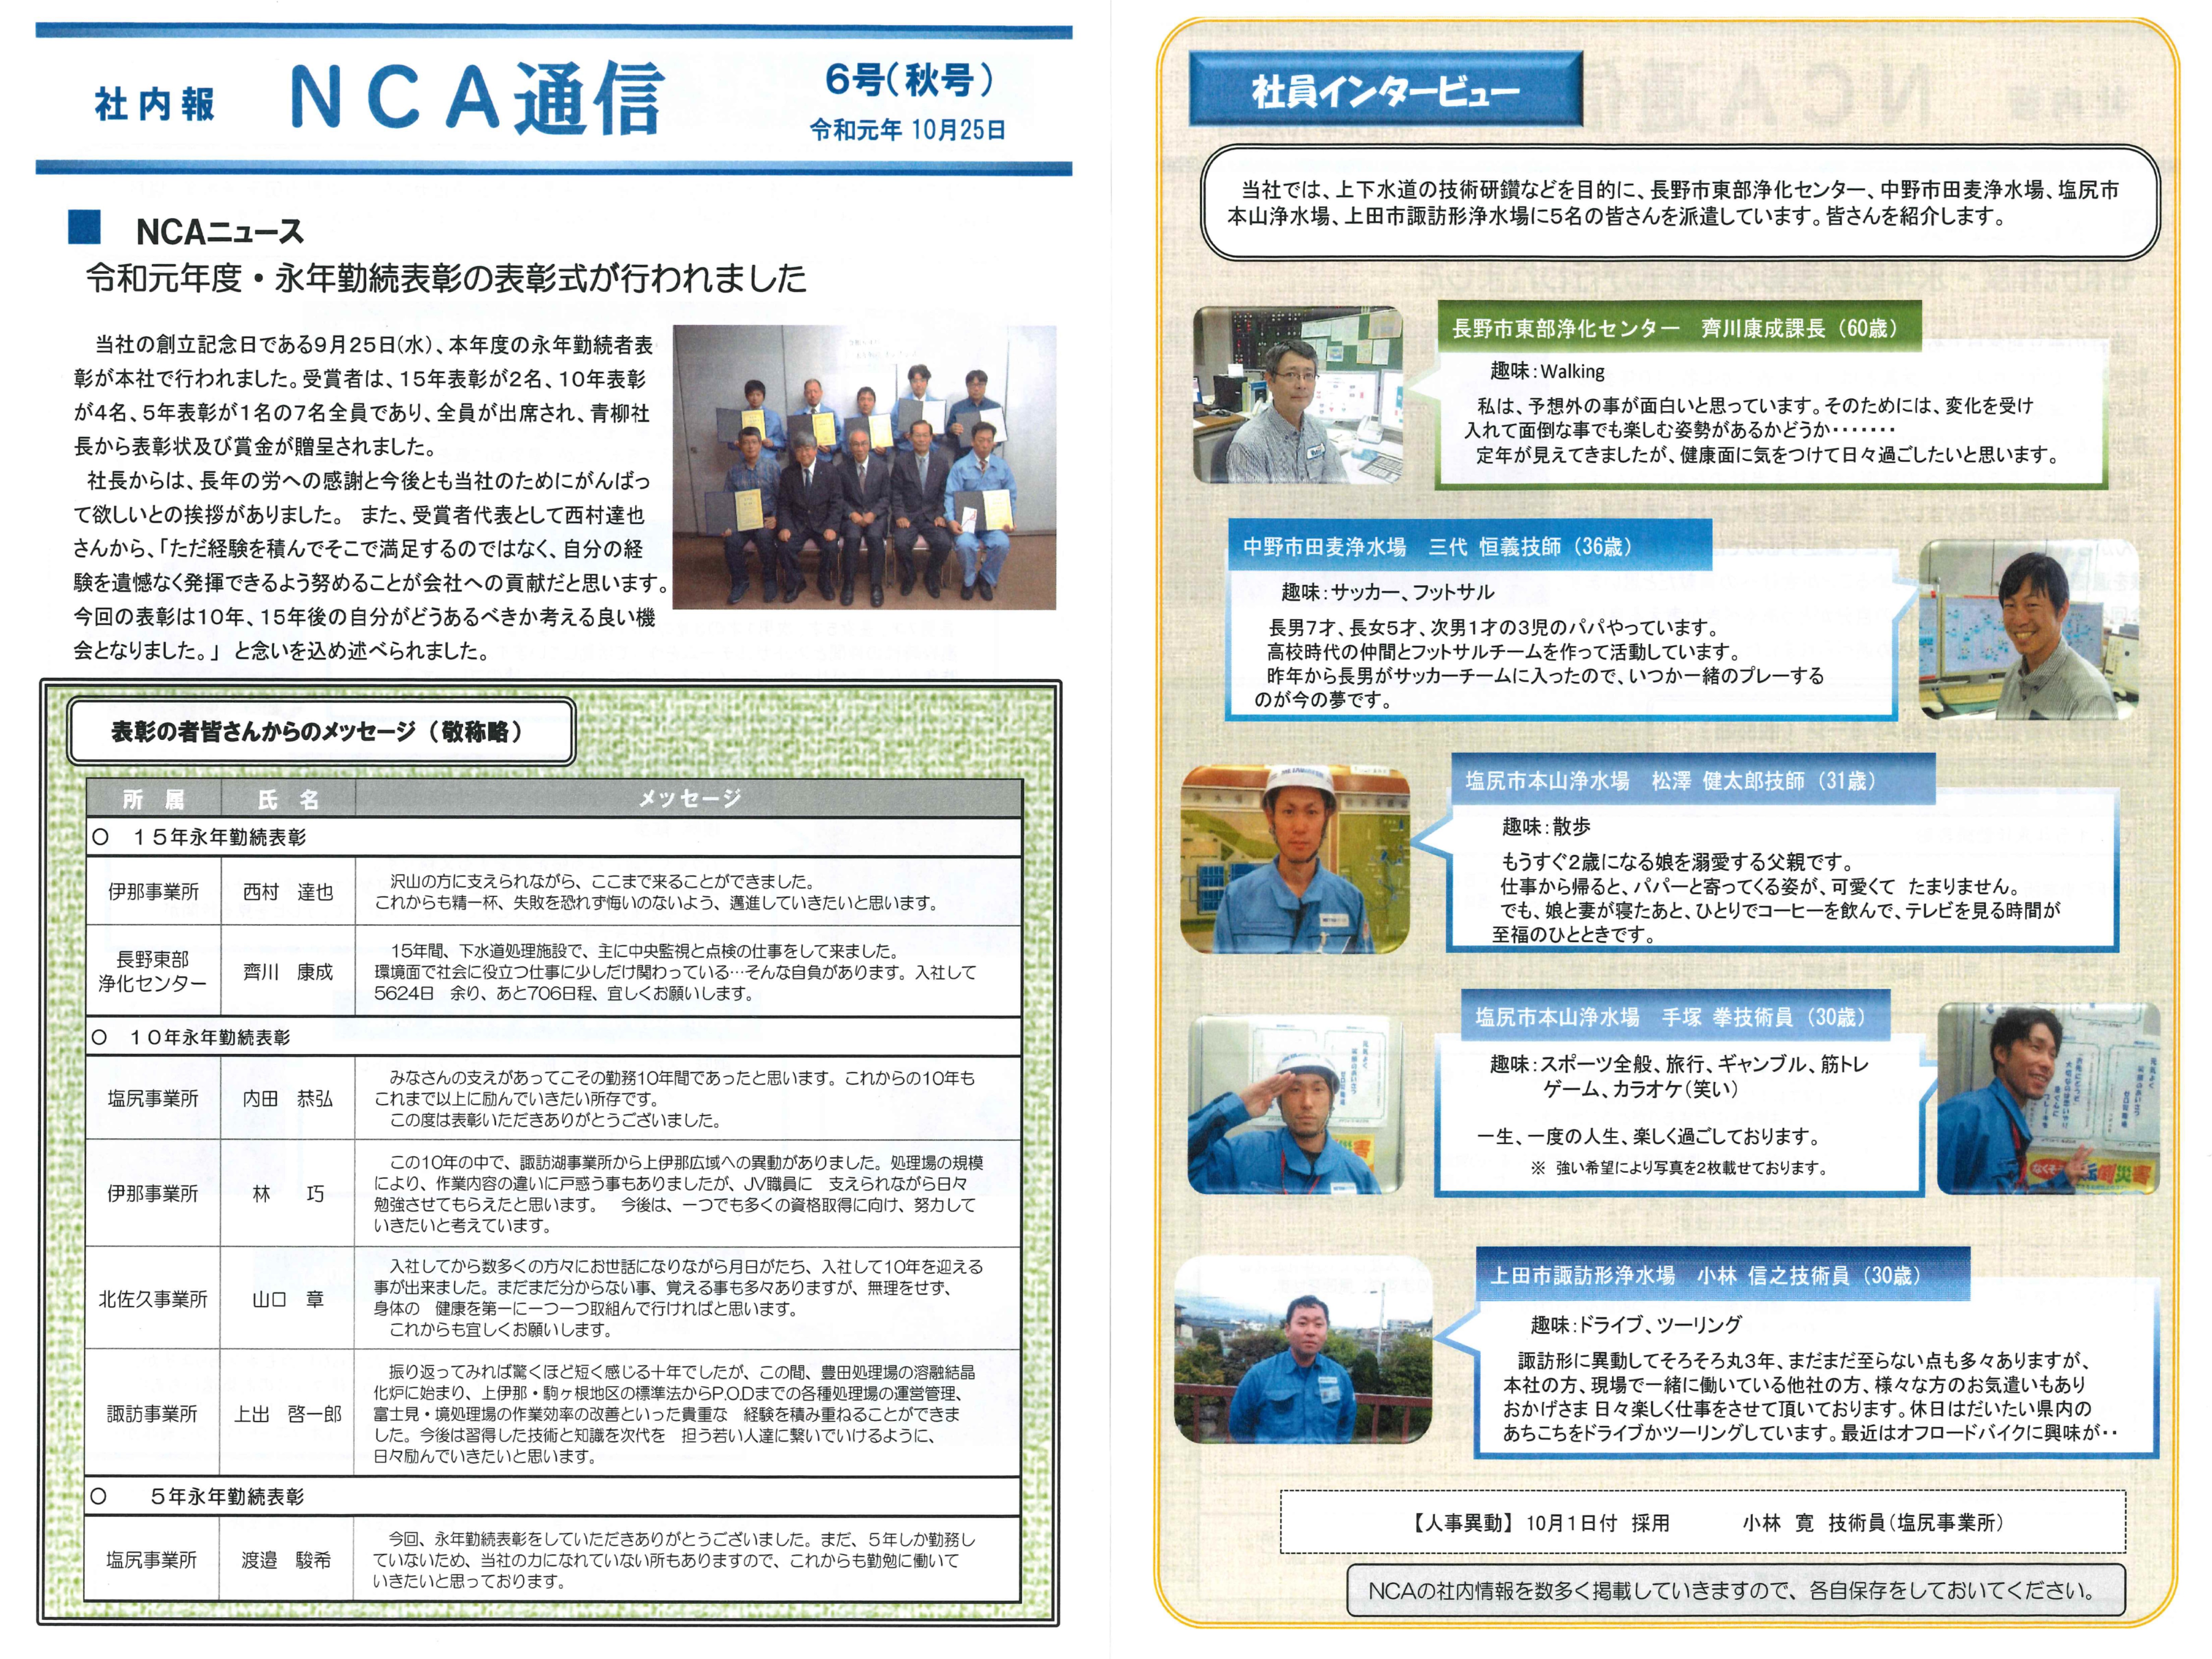 社内報6号(NCA通信)